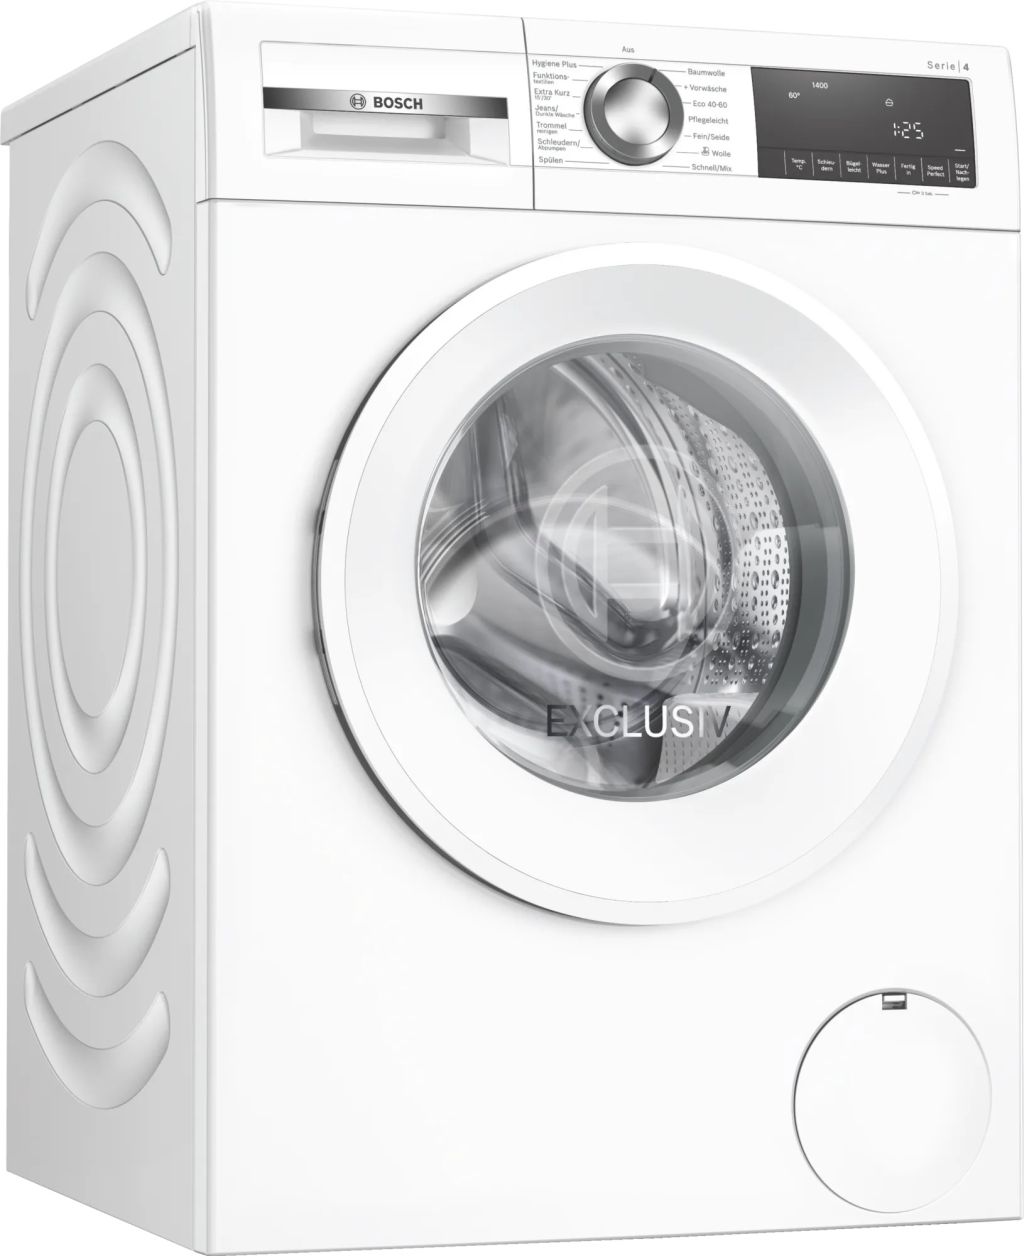 spuelemax.de Alles 1400 U/min Ihre Bosch – | Spuelemax WGG04408A EXCLUSIV A | Waschmaschine Küche für 9kg